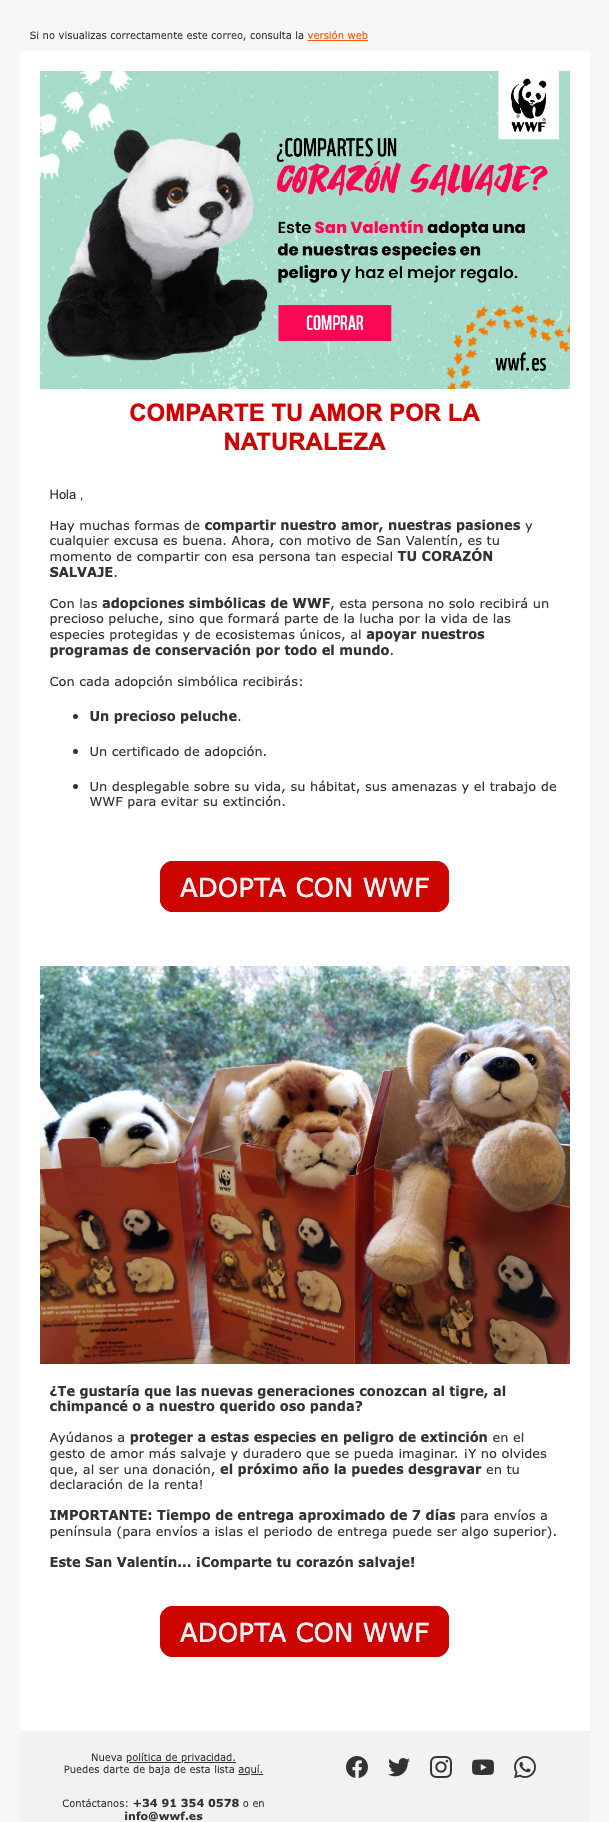 Un correo de WWF enfocado en San Valentín y aumentar las adopciones.